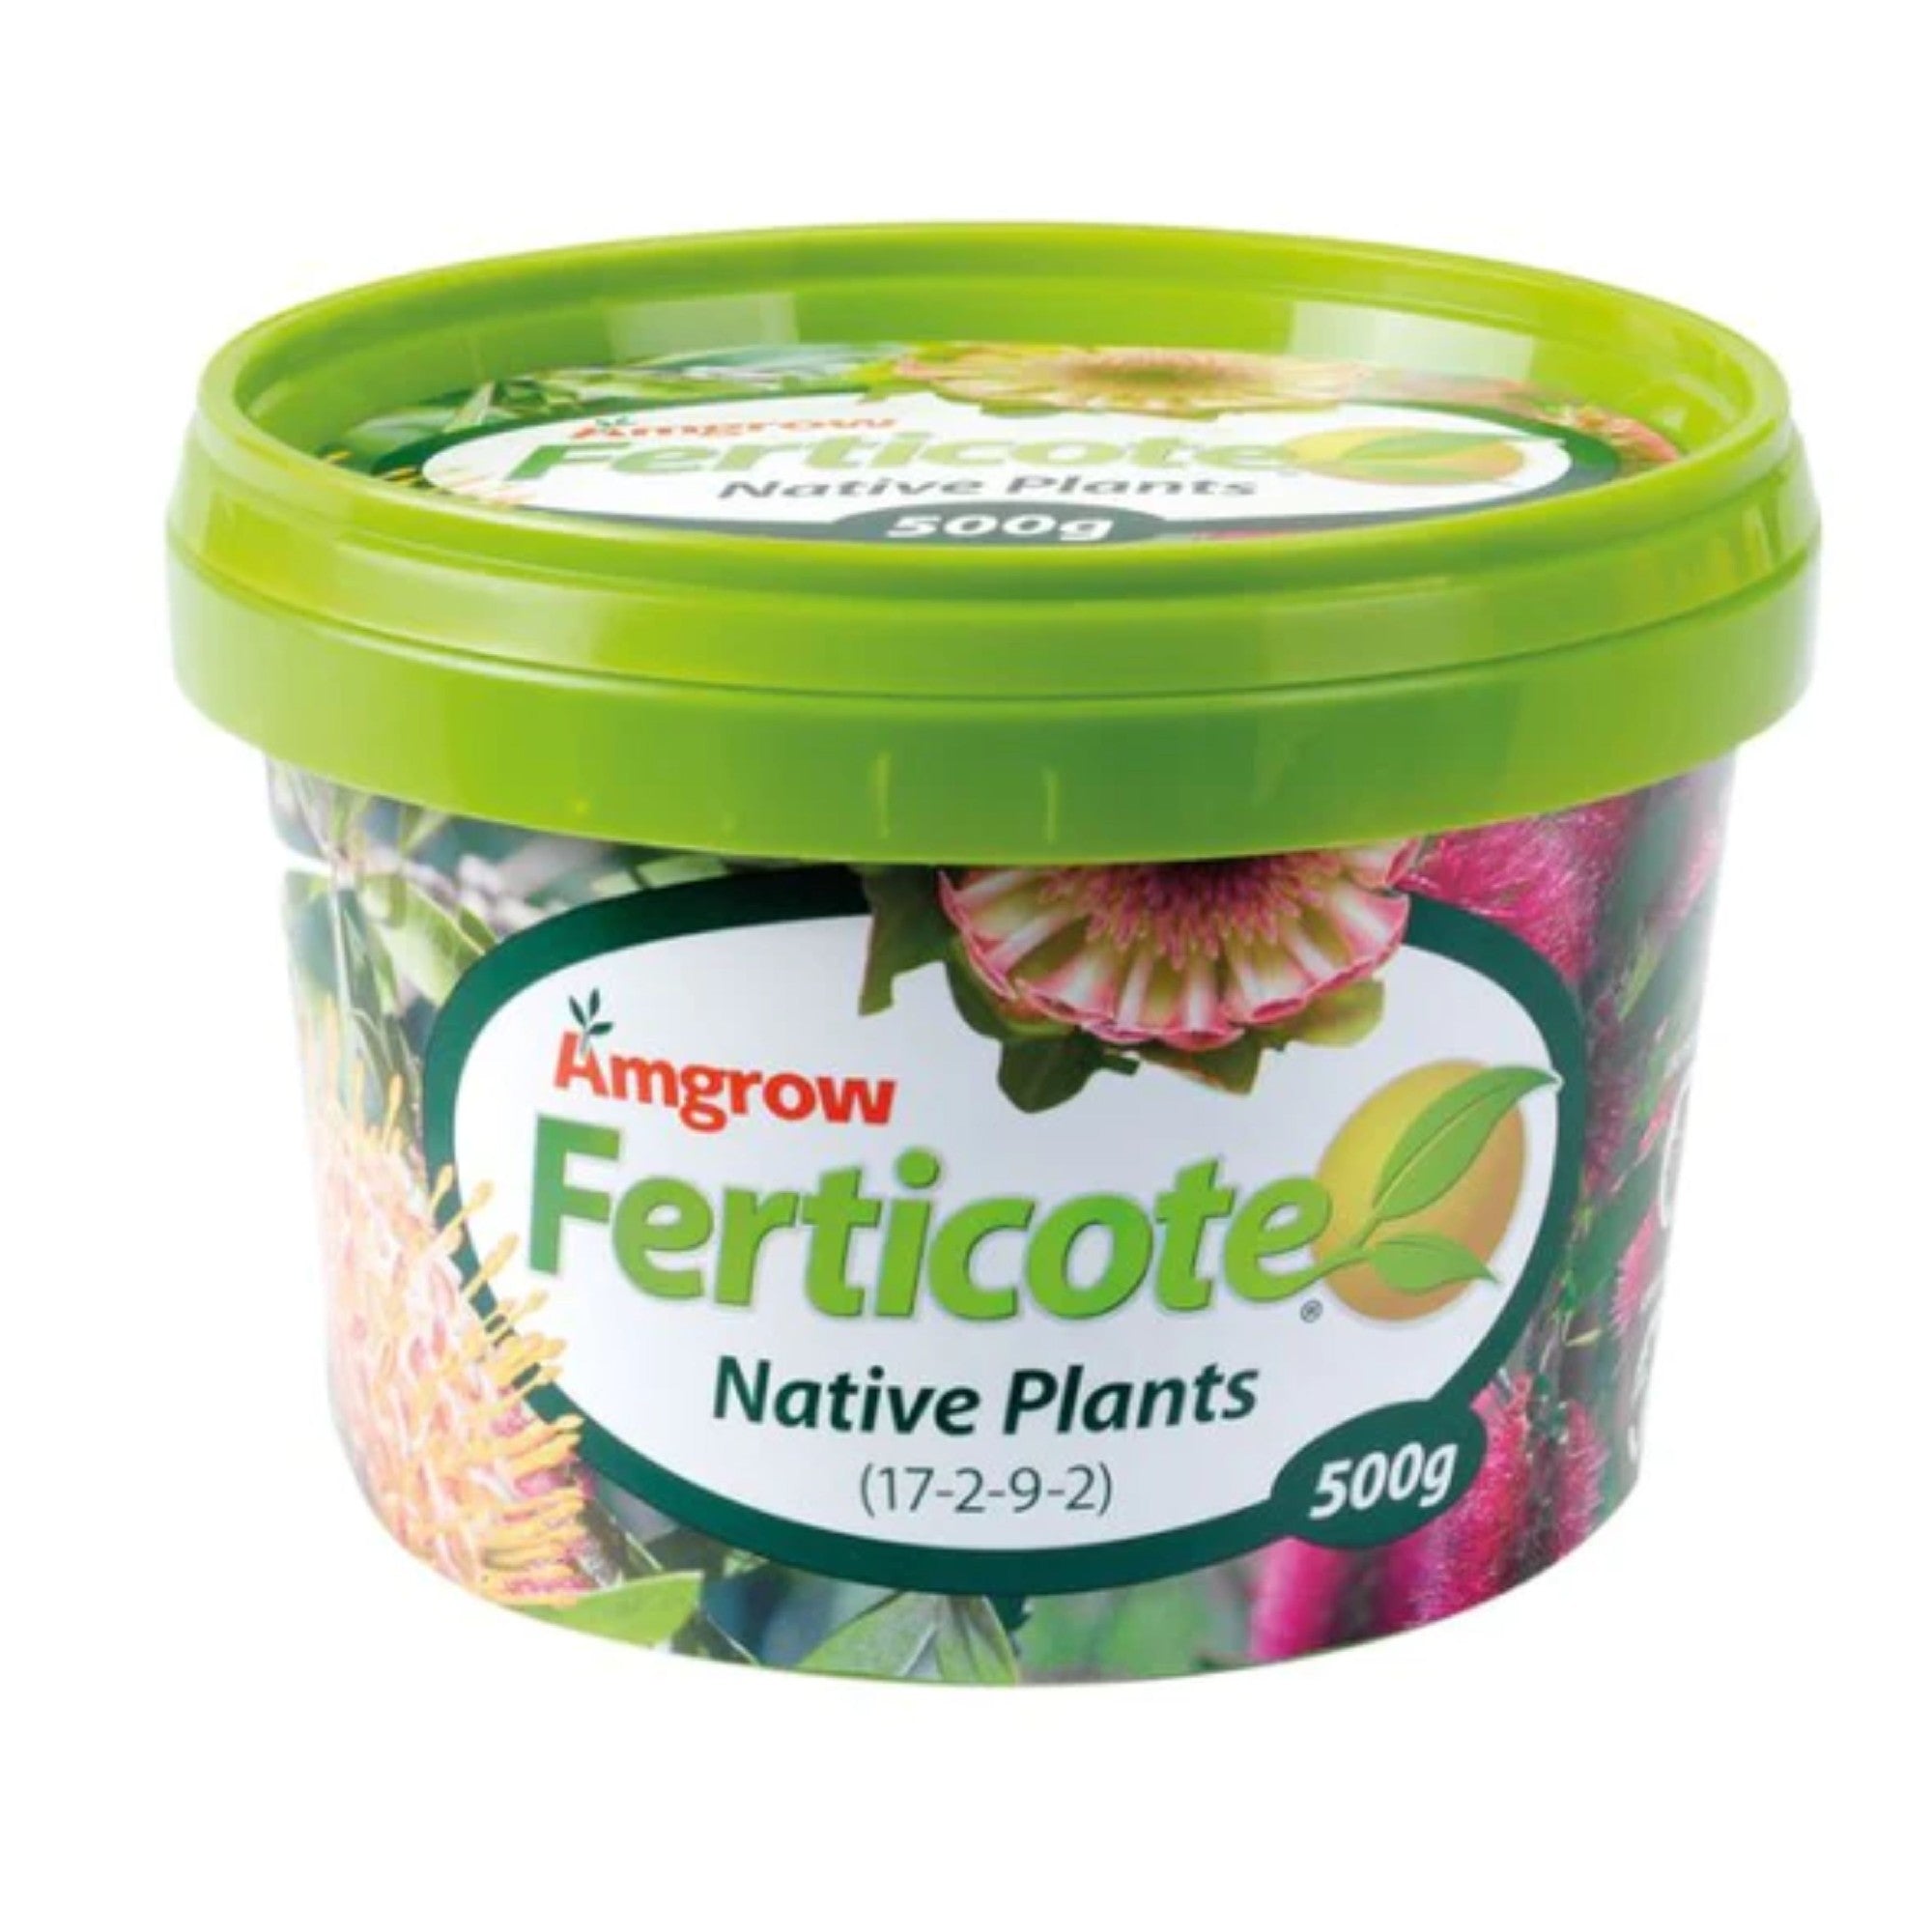 Ferticote Native Plants 500g